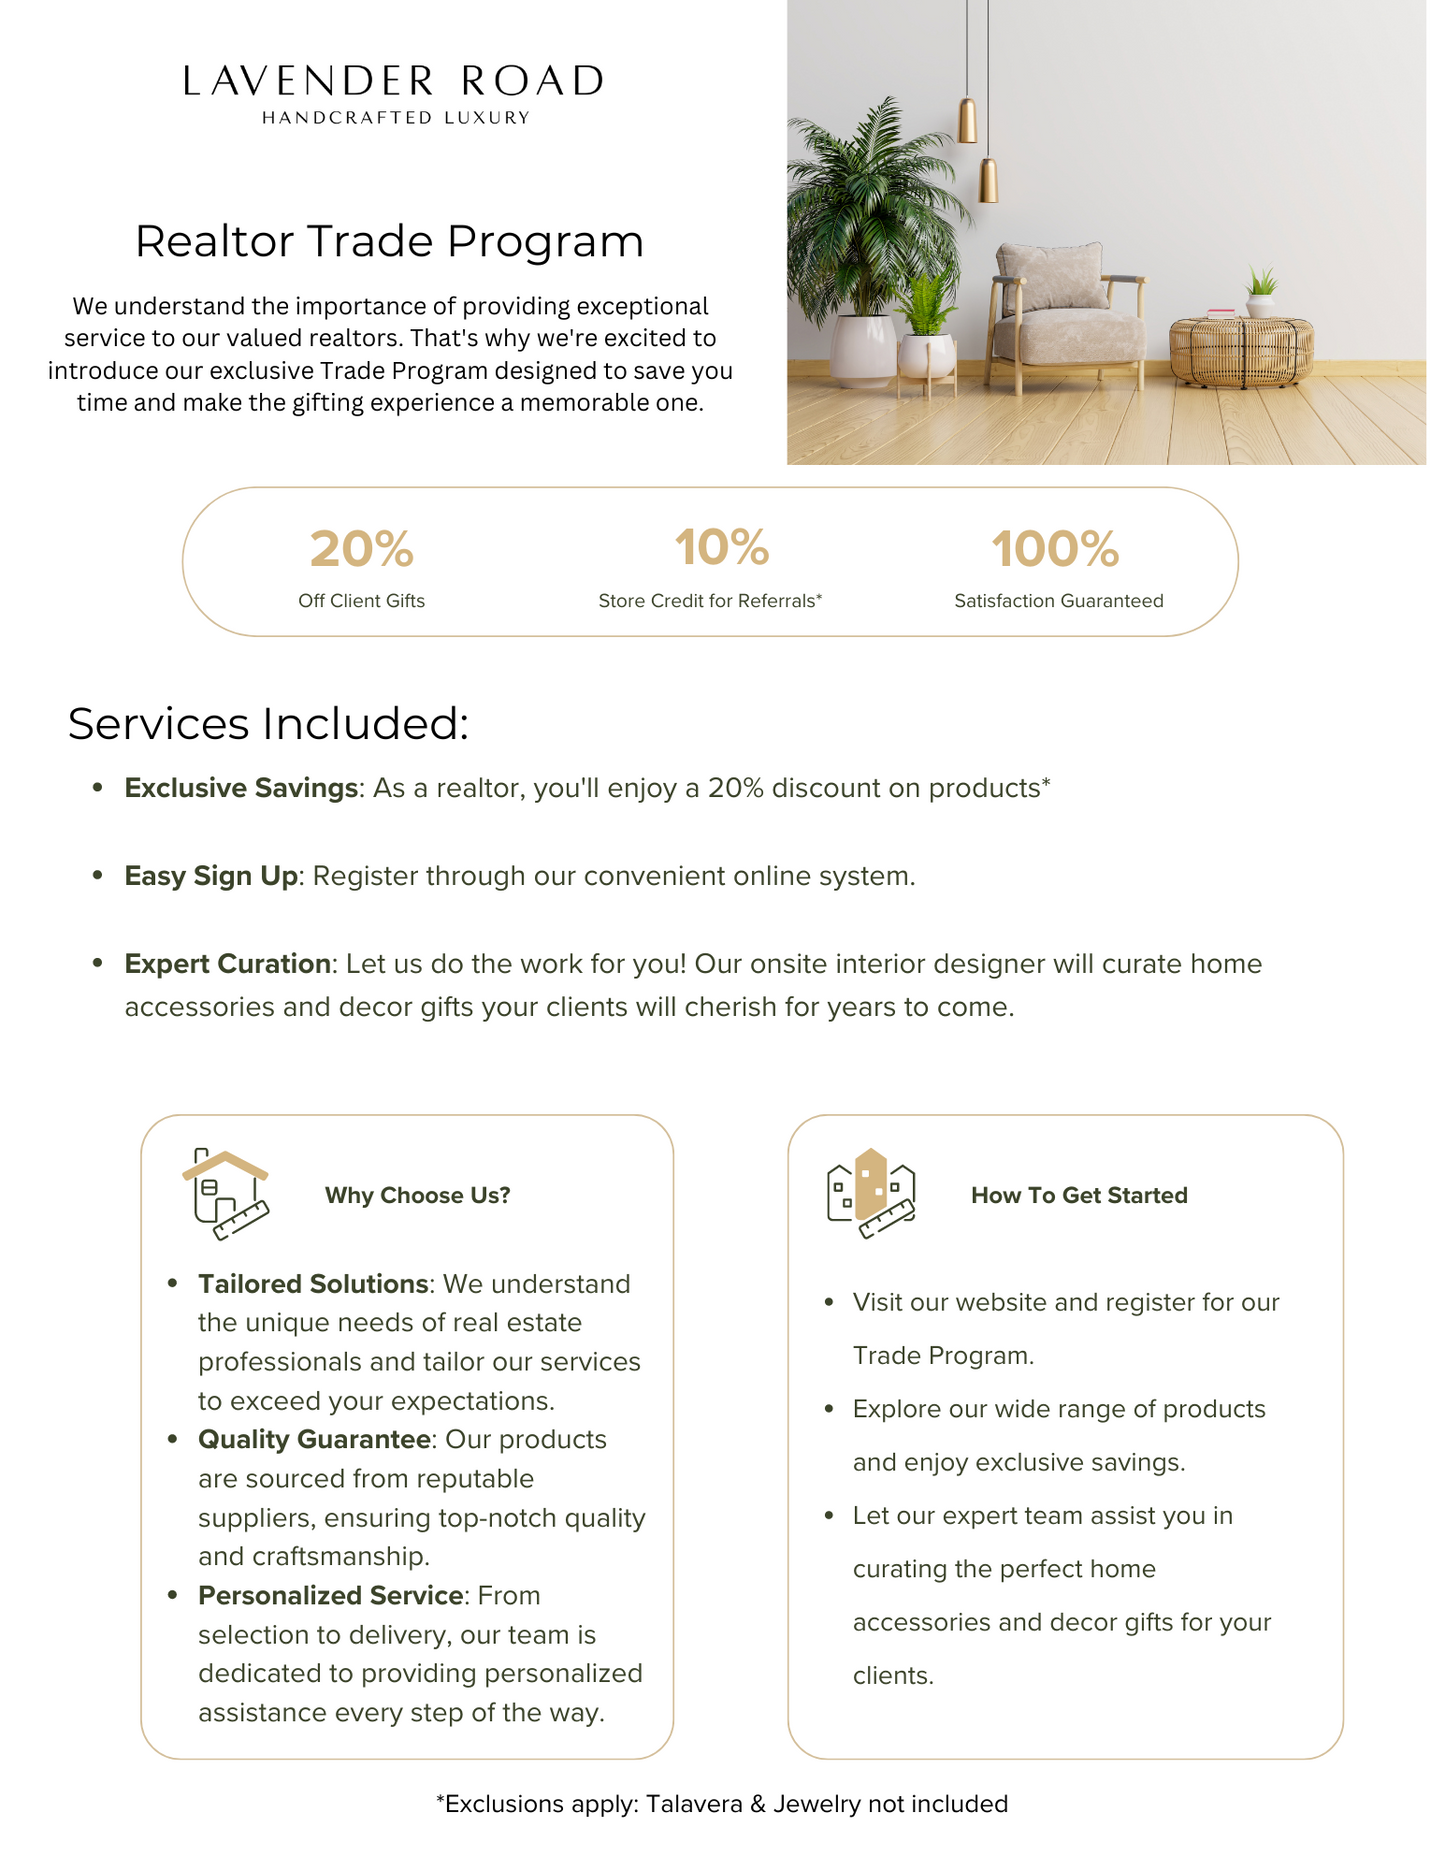 Realtor Trade Program Event